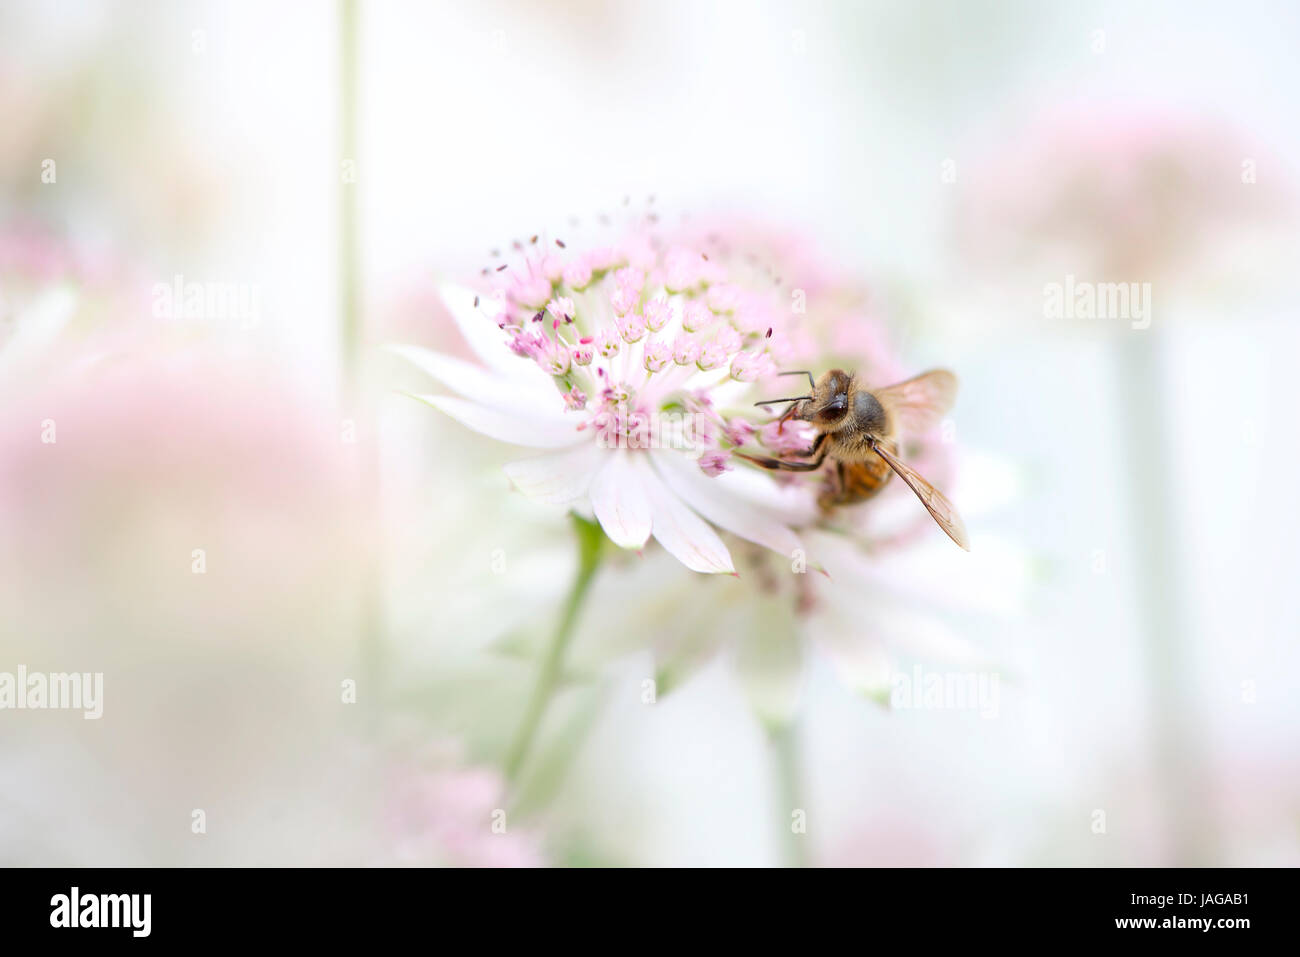 Nahaufnahme Bild einer Honig Biene Bestäubung eine Sommerblume Astrantia rosa auch bekannt als Meisterwurz. & Fauna Flora Konzepte Stockfoto